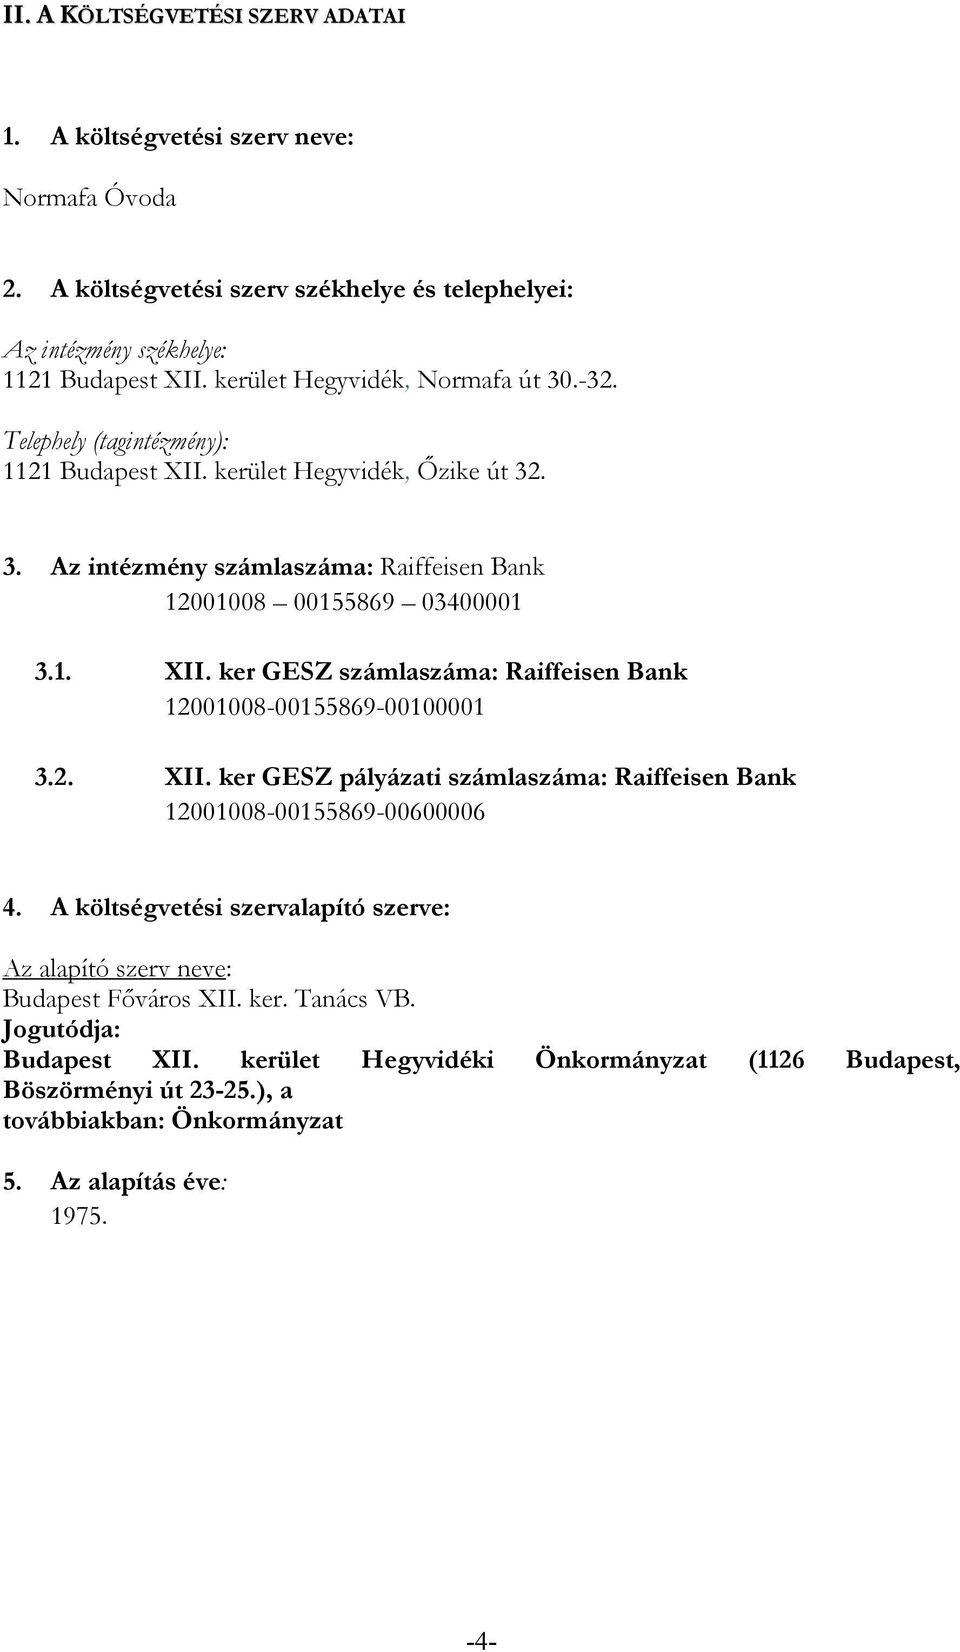 2. XII. ker GESZ pályázati számlaszáma: Raiffeisen Bank 12001008-00155869-00600006 4. A költségvetési szervalapító szerve: Az alapító szerv neve: Budapest Fıváros XII. ker. Tanács VB.